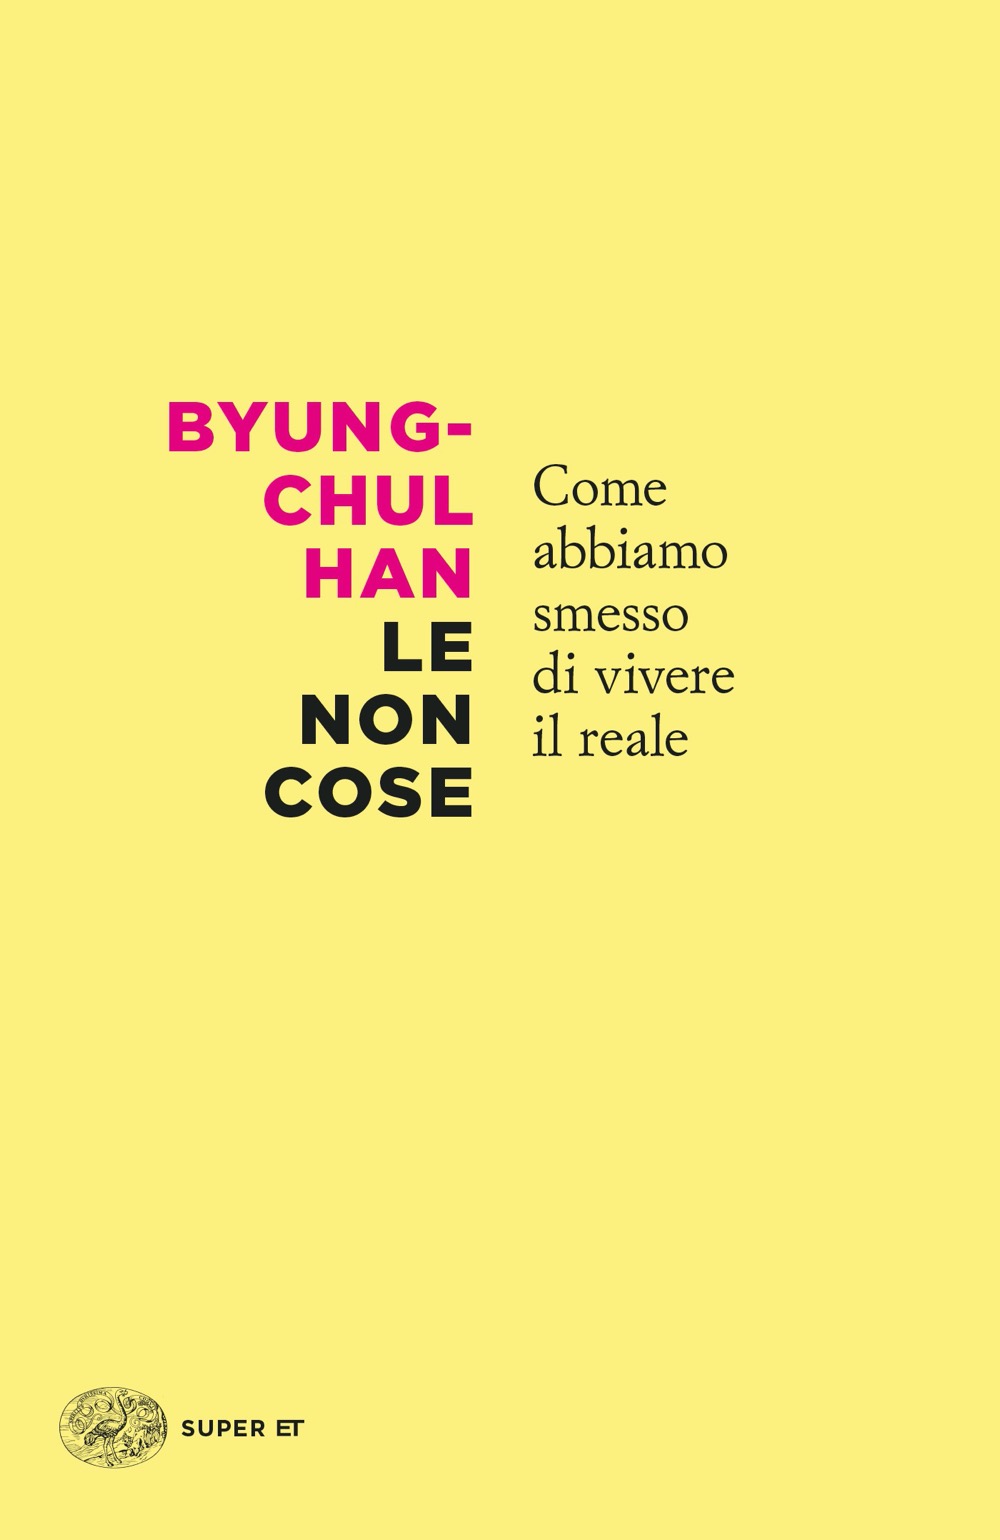 Le non cose, Byung-chul Han. Giulio Einaudi editore - Super ET